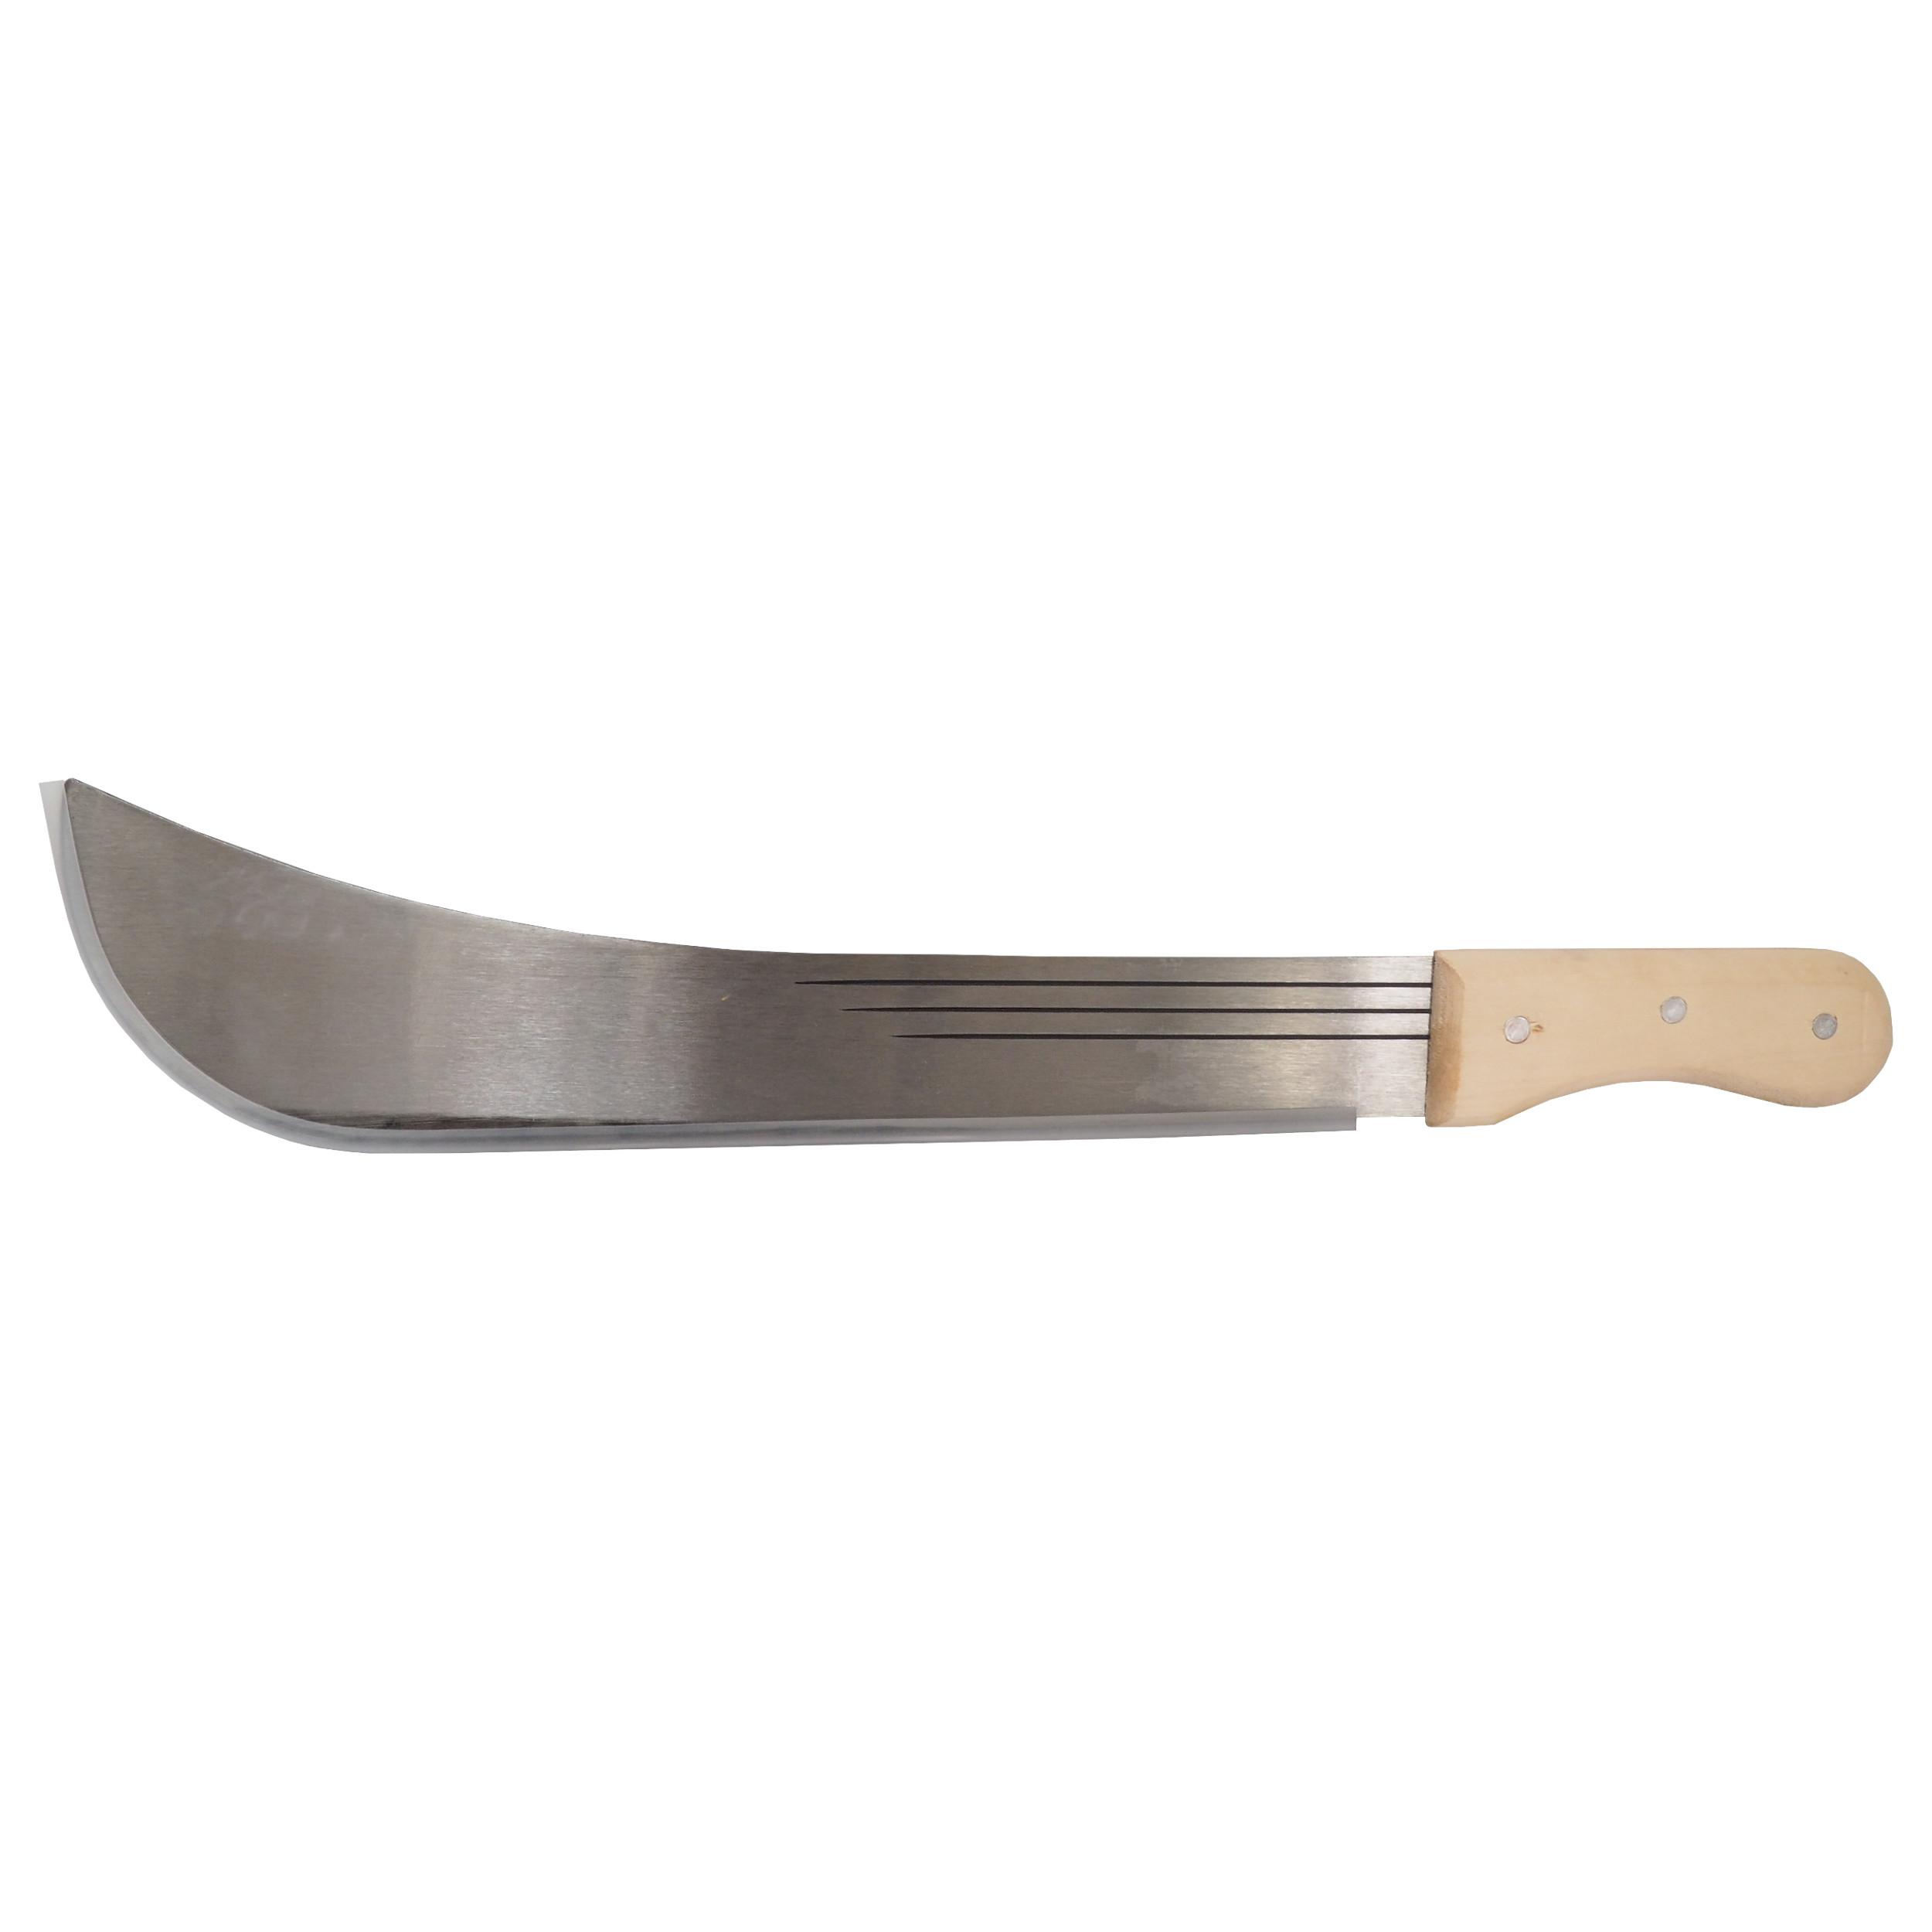 TOPTRADE mačeta ocelová, s dřevěnou rukojetí, 20“ čepel, 700 mm 0.62 Kg TOP Sklad4 309174 361